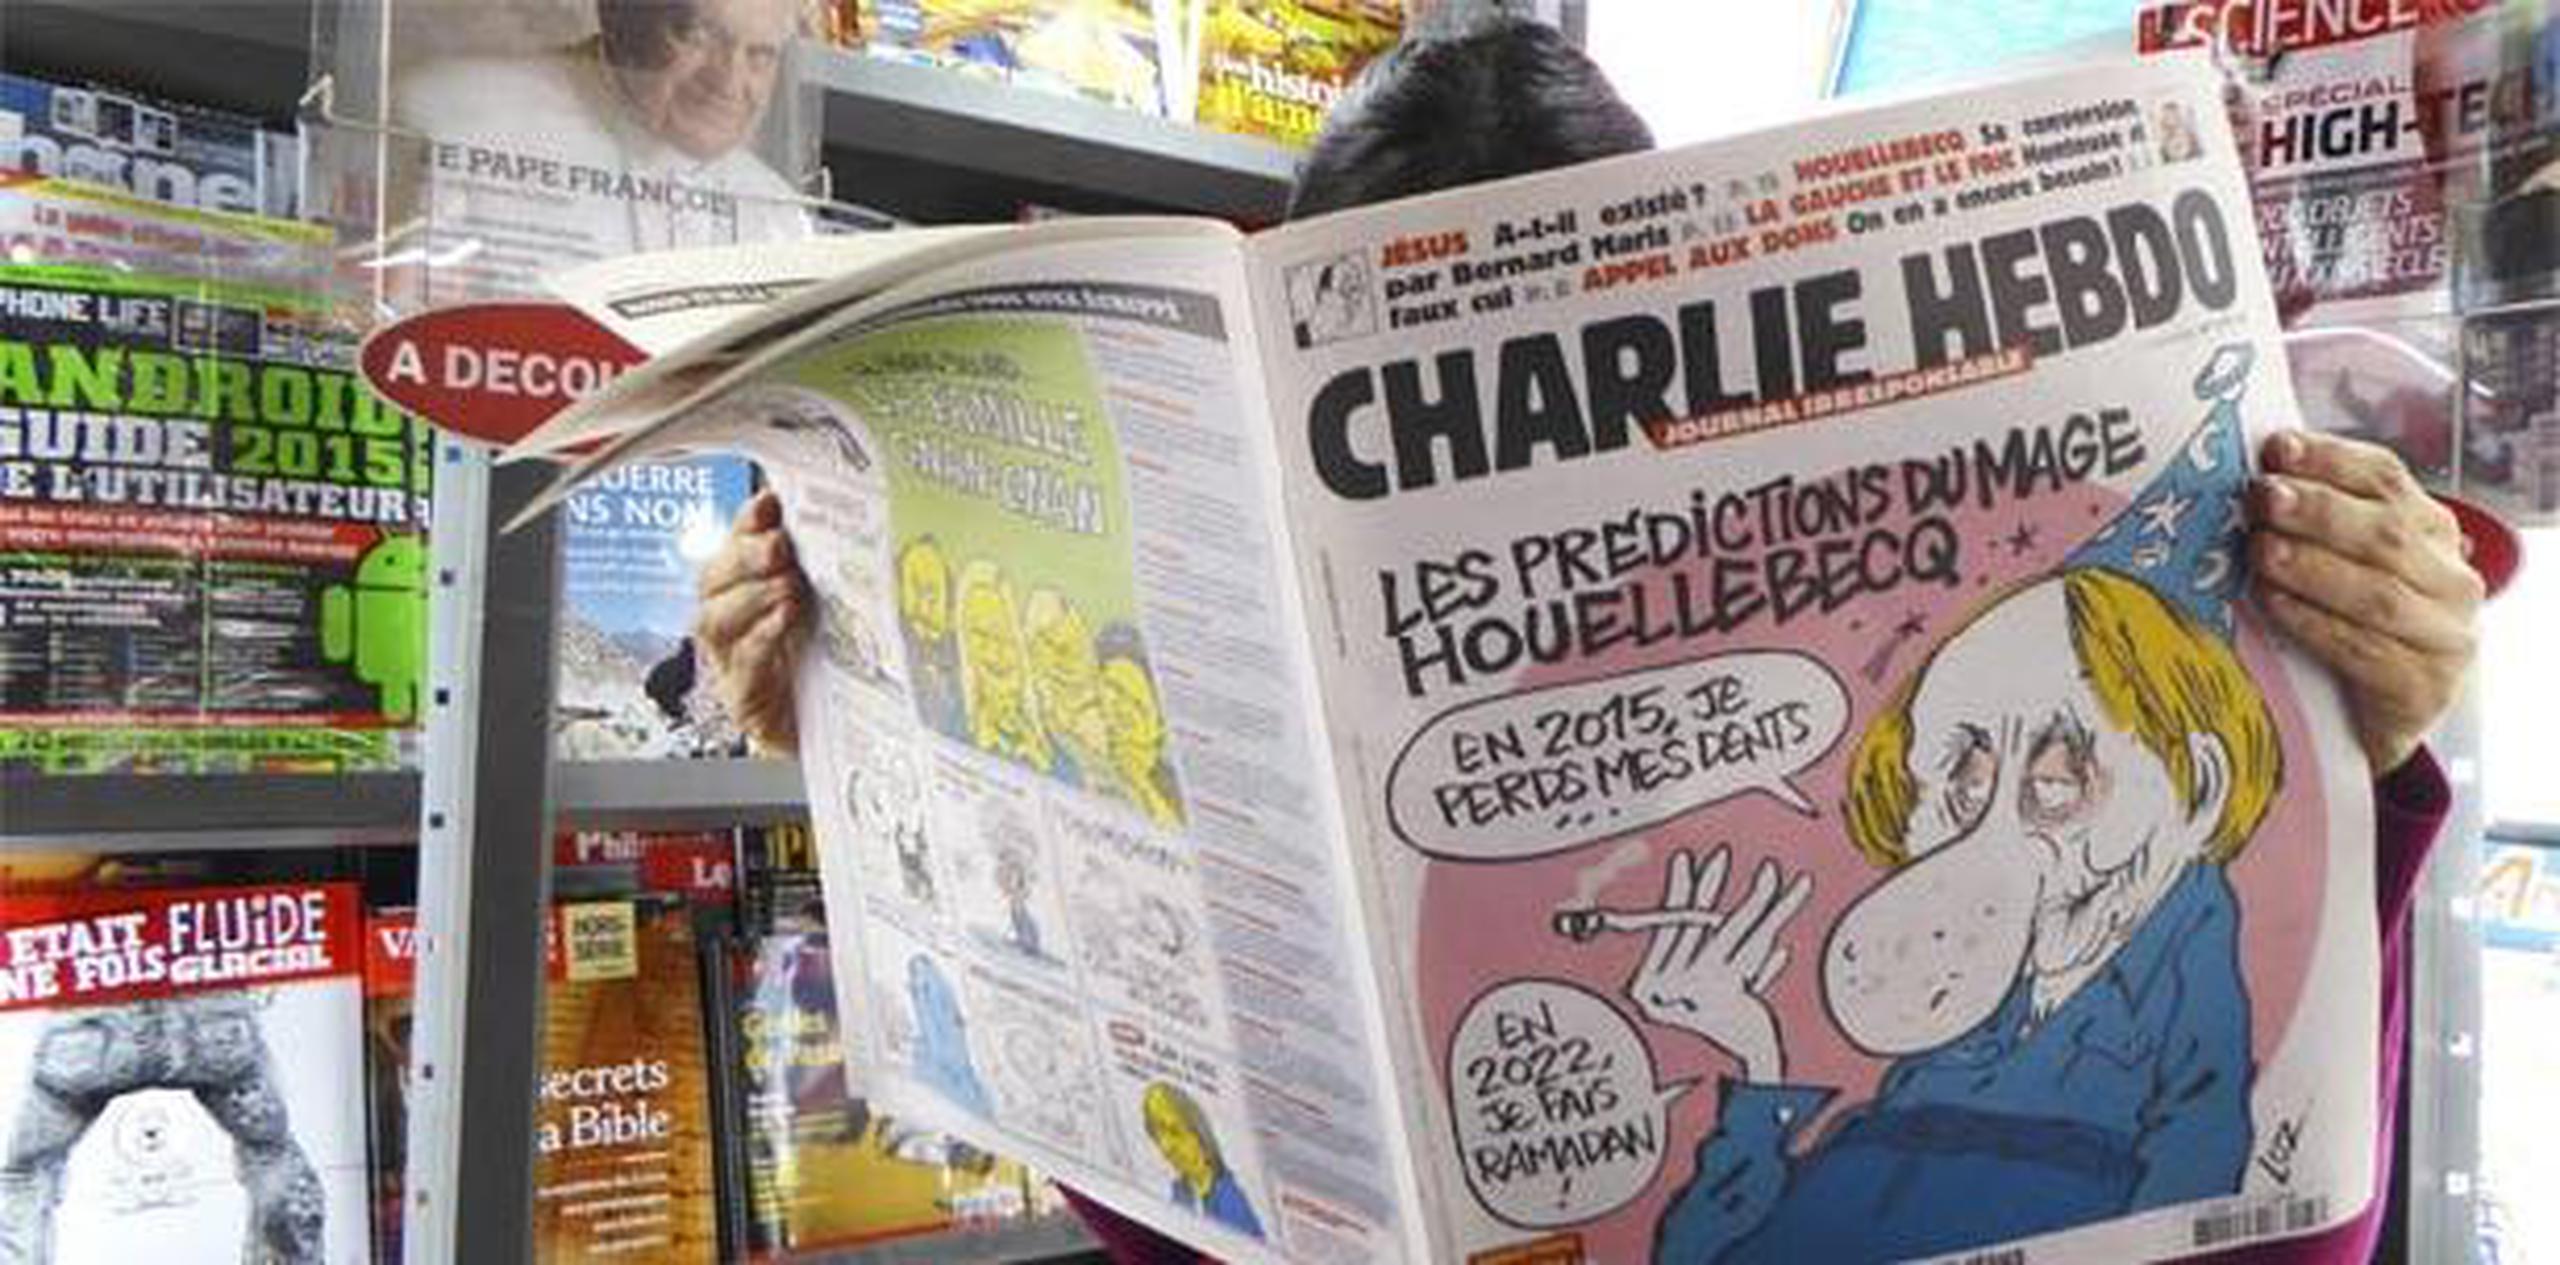 Las nuevas amenazas fueron vertidas en la página oficial de "Charlie Hebdo" en la red social Facebook y también a través de una carta manuscrita enviada a la redacción. (Archivo)